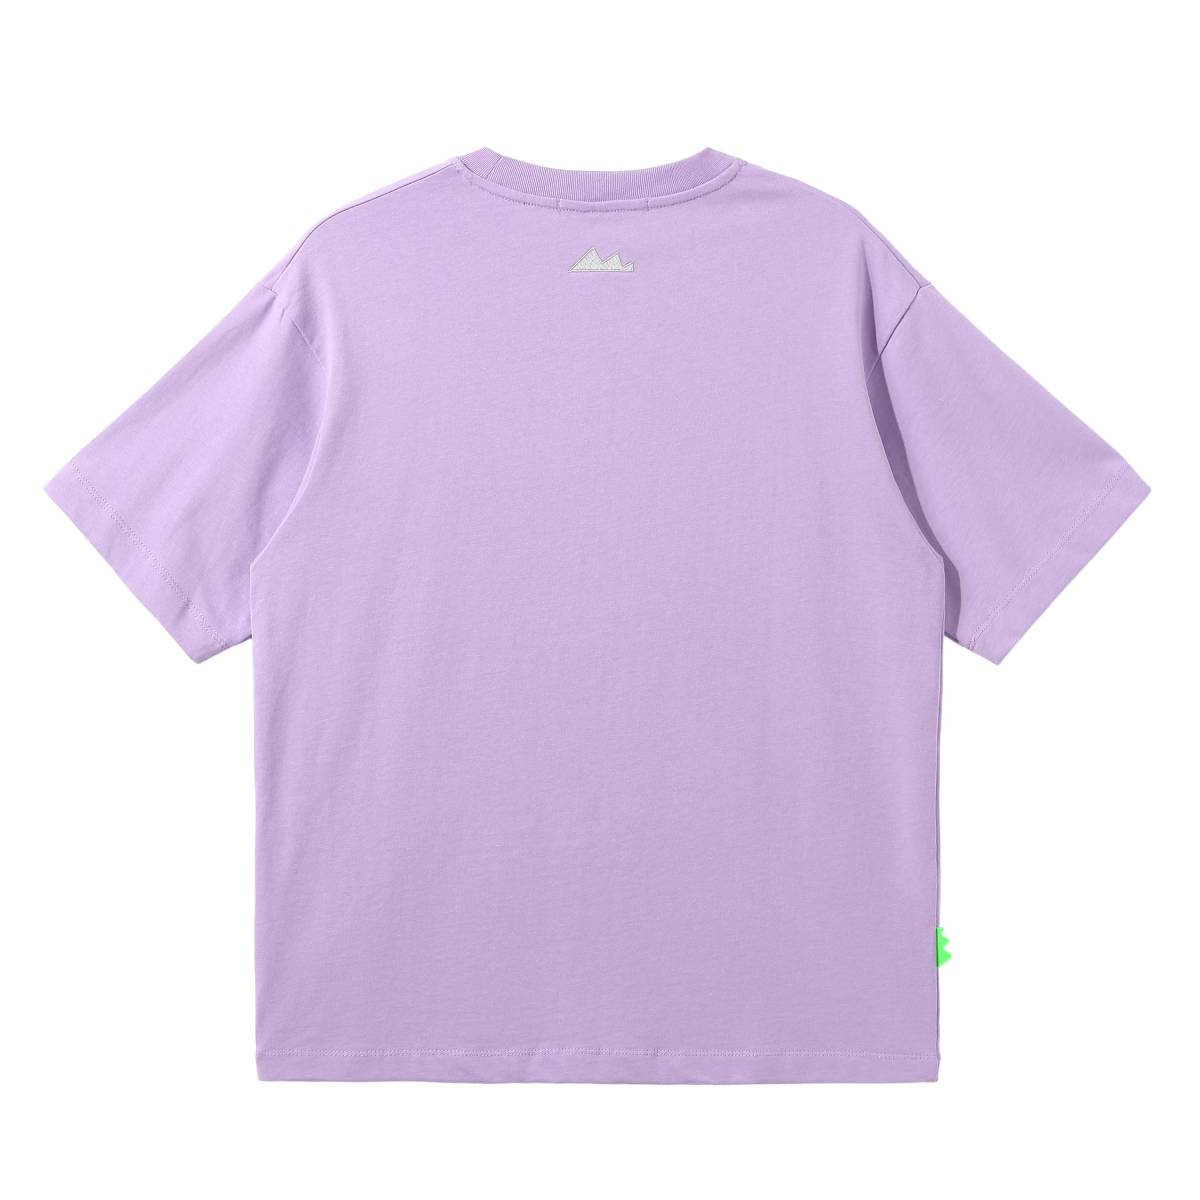 内购-FOURTRY紫色box logoT恤 21SS01PU11X